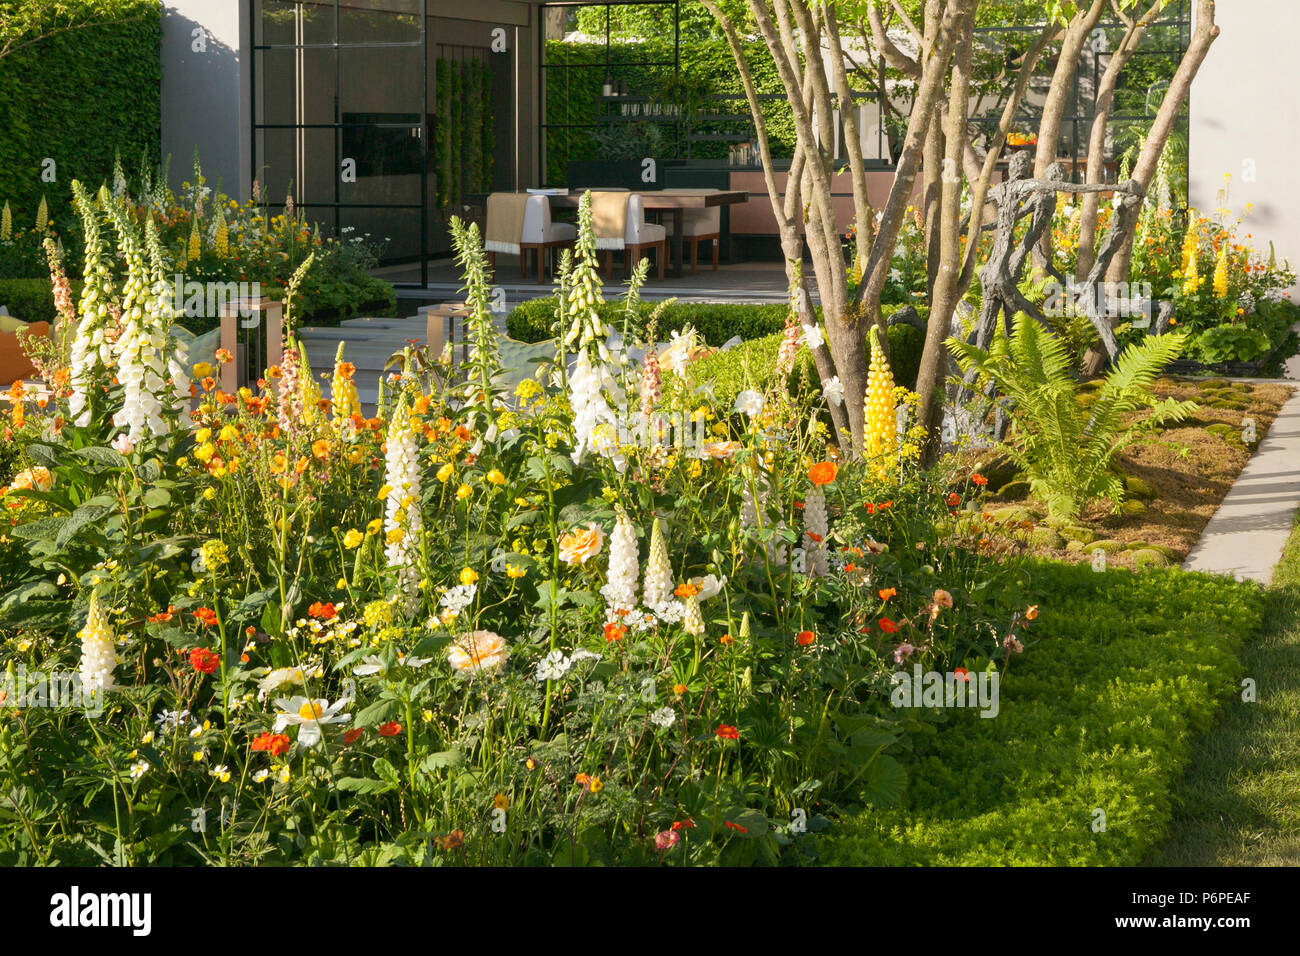 La LG Eco-City giardino giardino mostra al RHS Chelsea Flower Show 2018. Progettato da Hay-Joung Hwang. Costruito da Randle Siddeley. Sponsorizzato da LG. Foto Stock